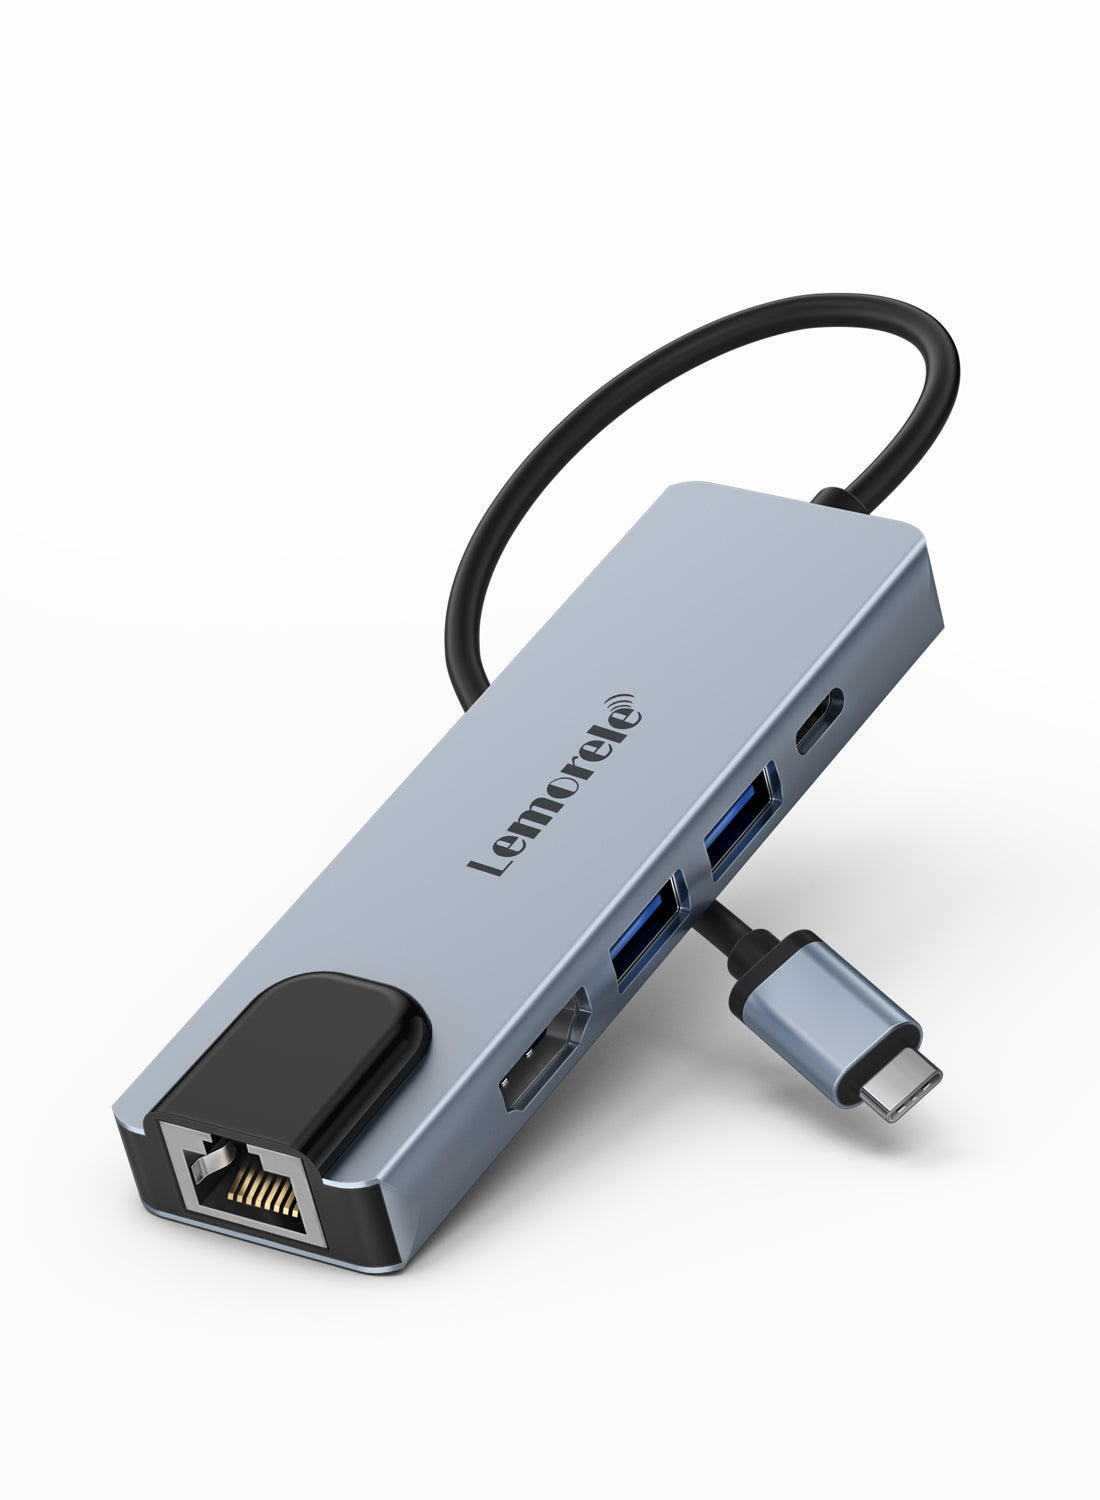 Lemorele Hub USB C 5 in 1【#TC15】 